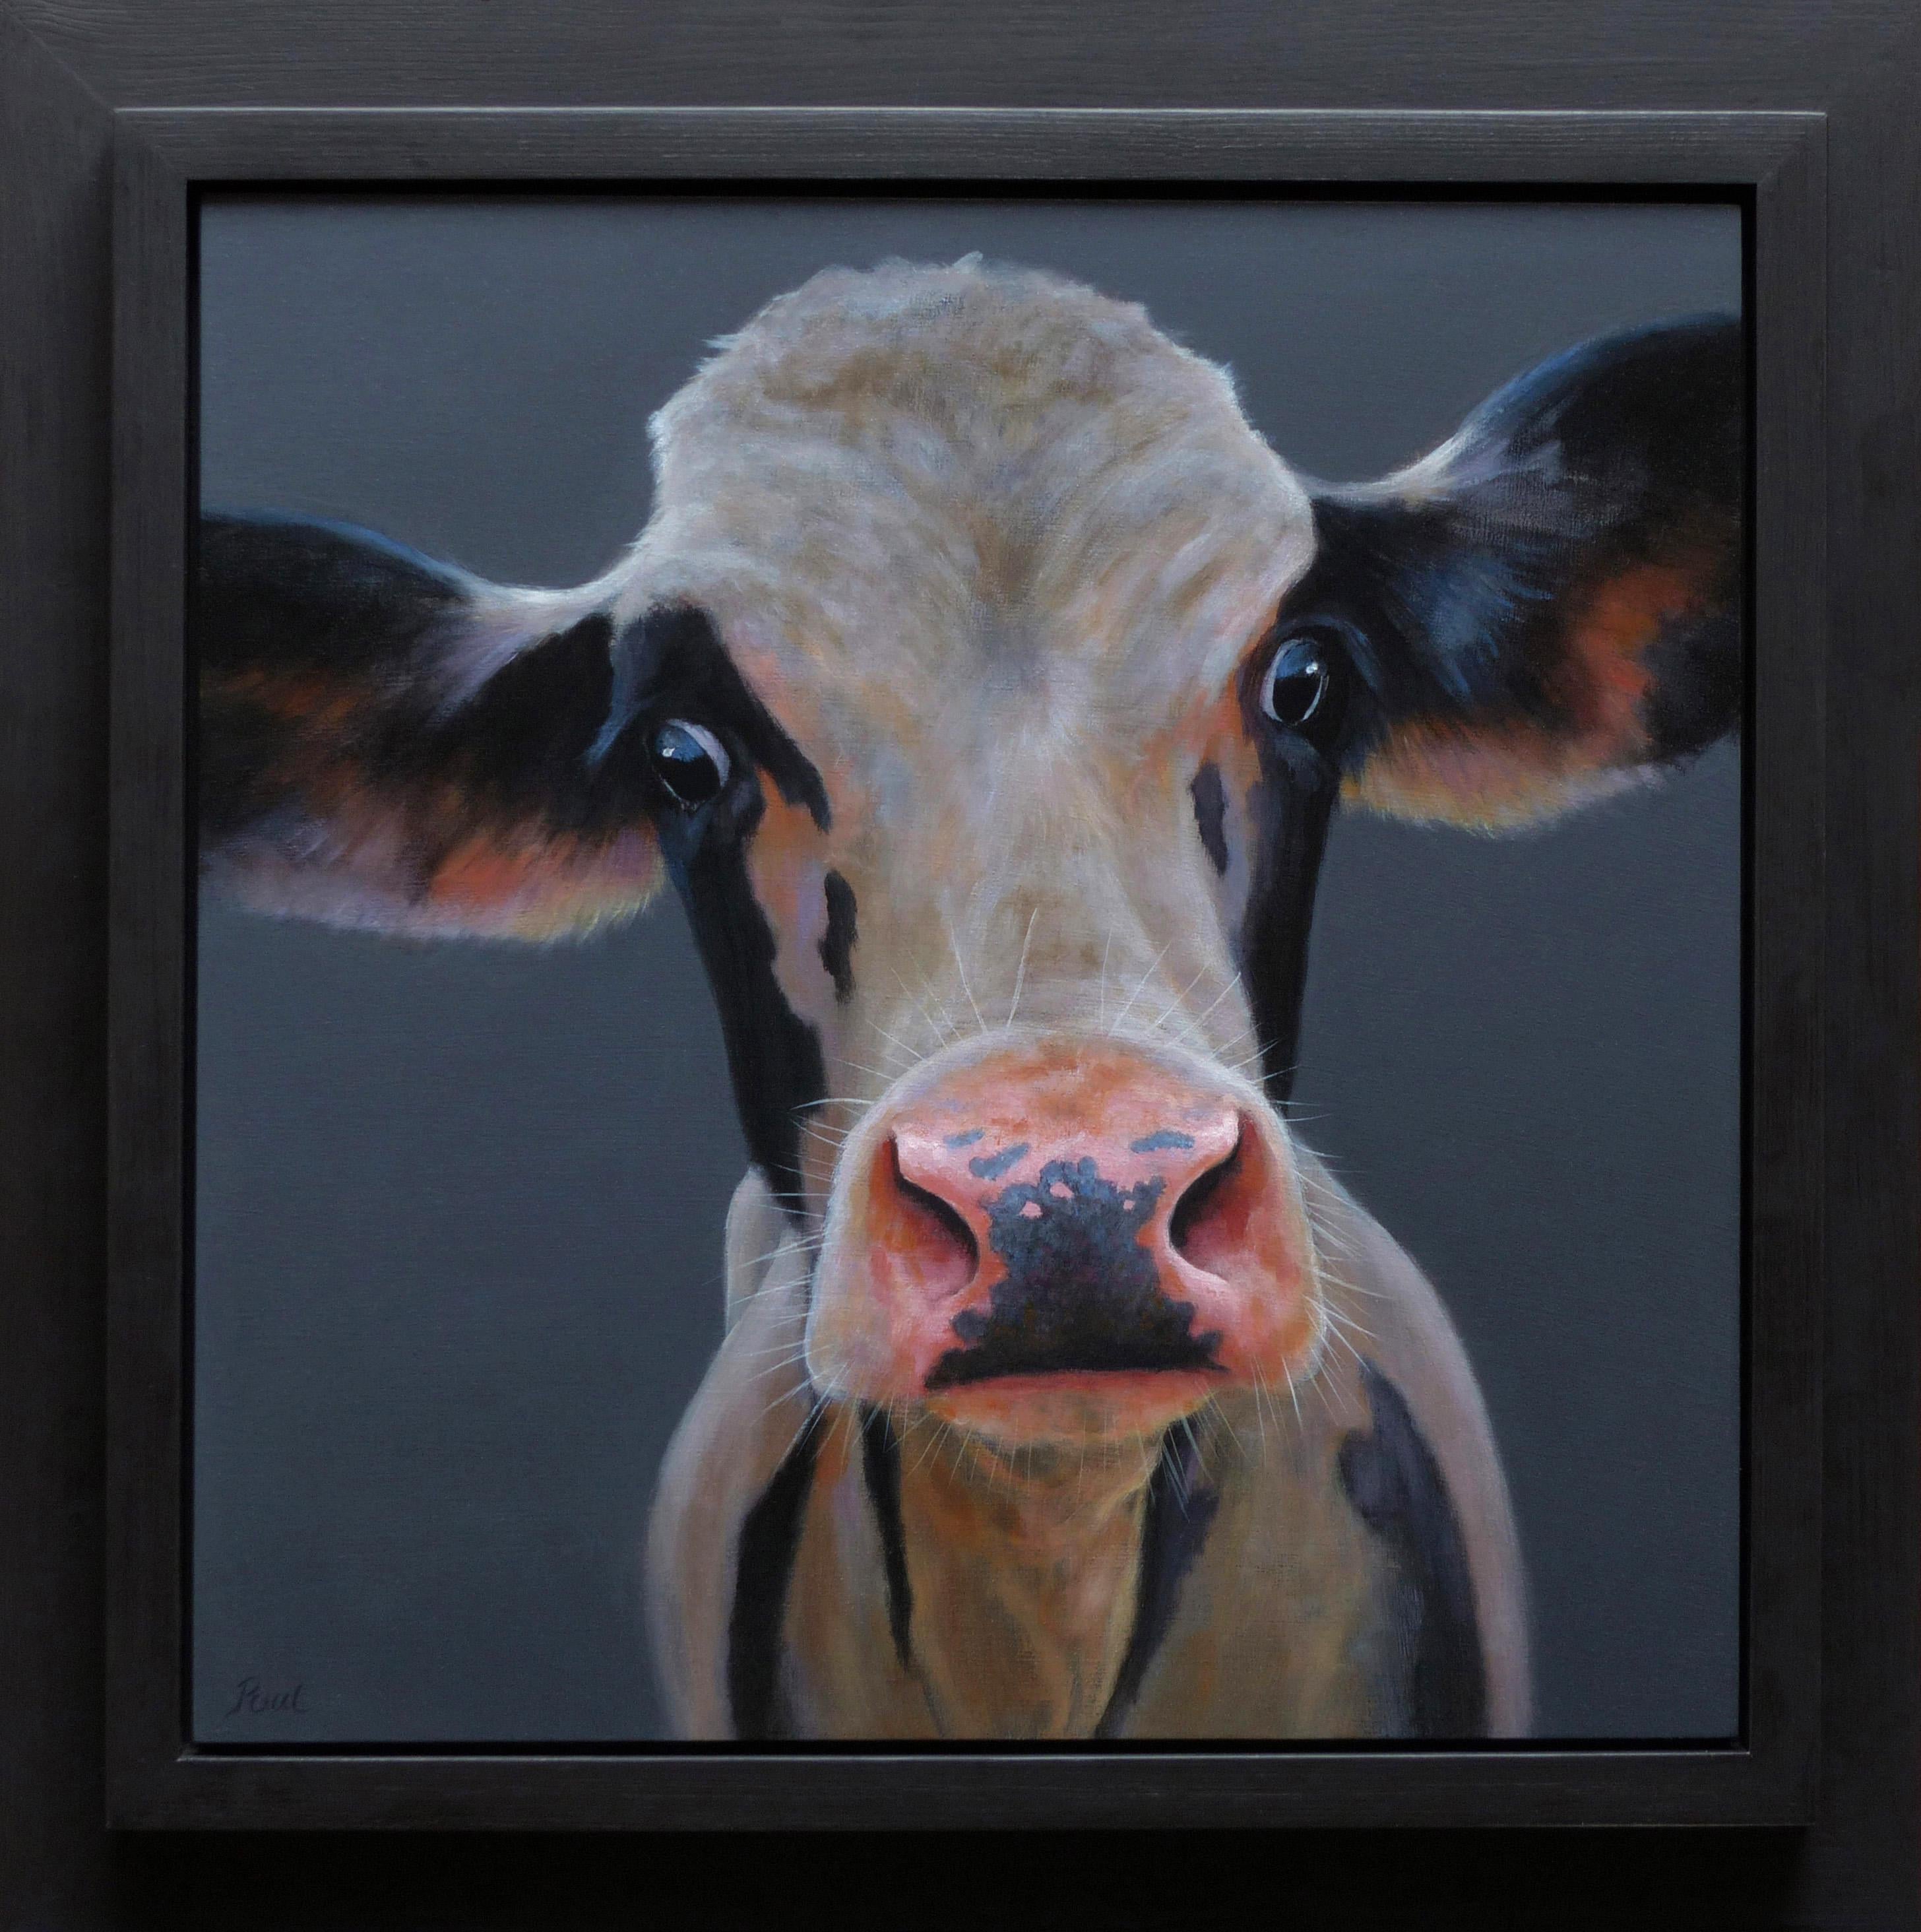 Figurative Painting Paul Jansen - "Portrait 418" Peinture à l'huile contemporaine néerlandaise d'un veau noir et blanc, vache